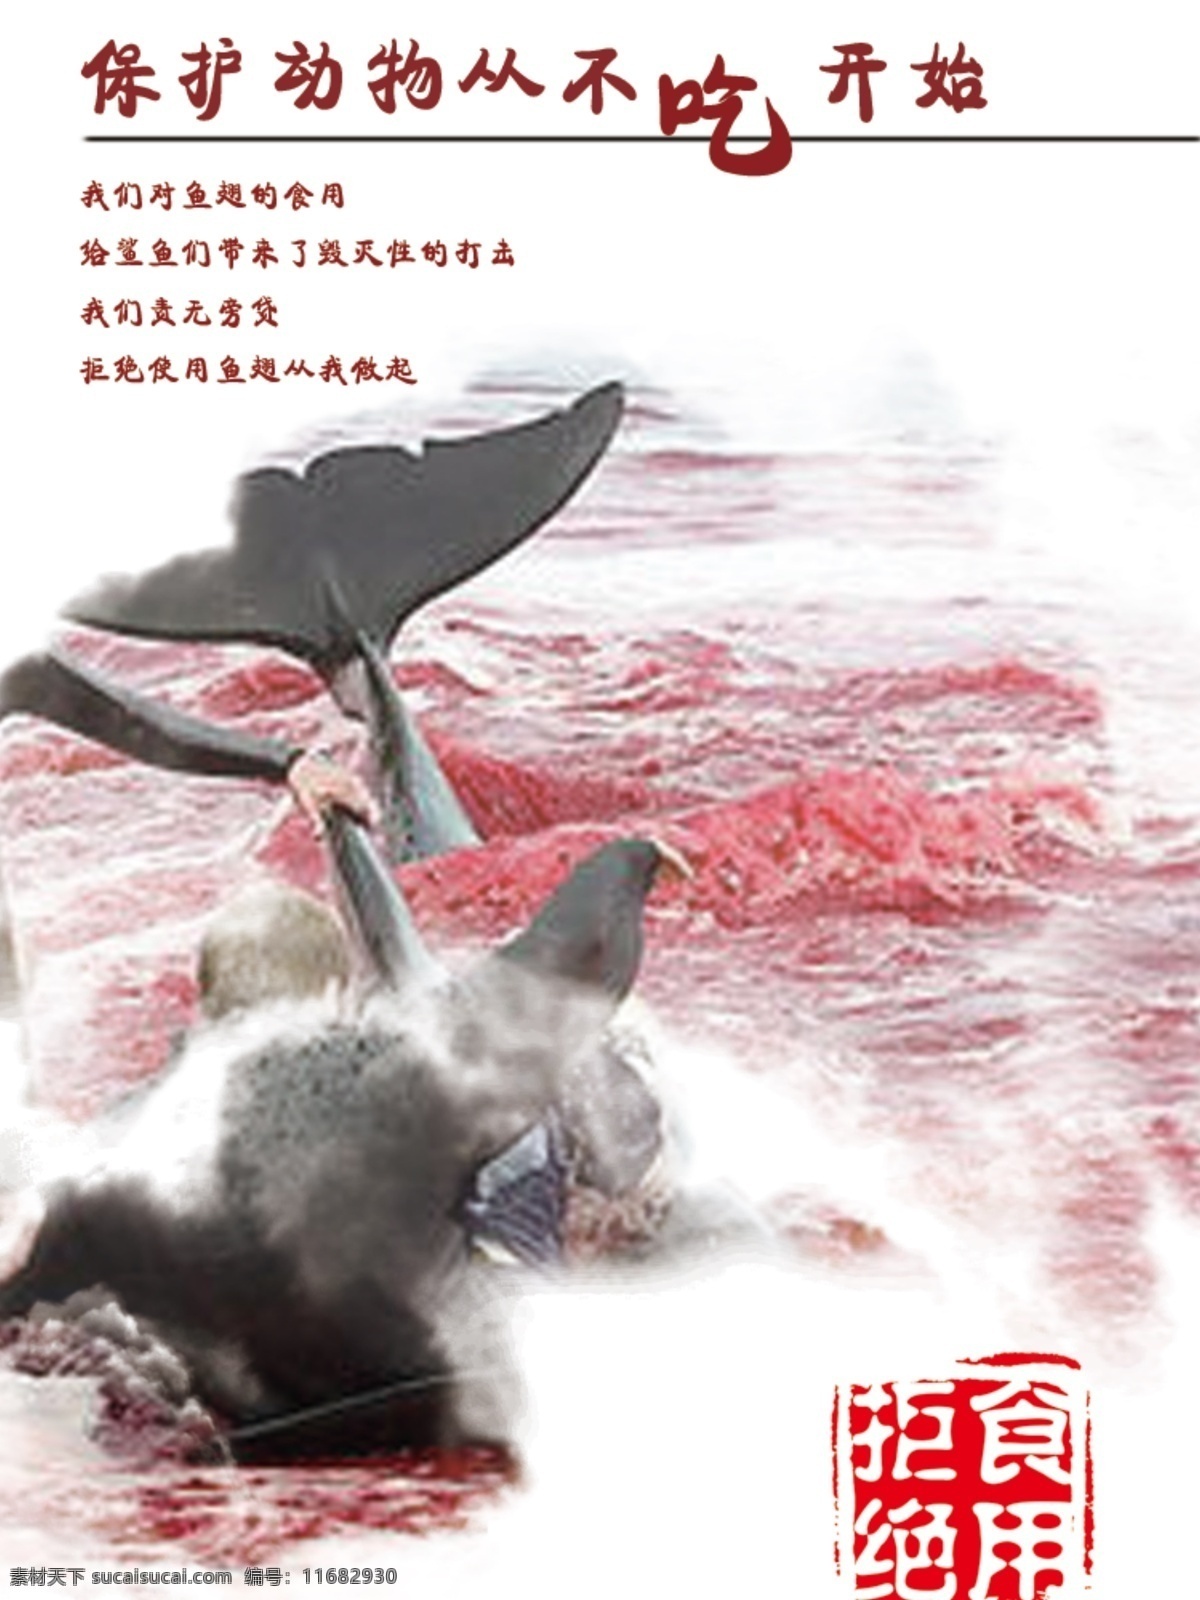 保护 动物 保护动物 人与自然 鱼翅 血腥 拒绝食用 海报 原创设计 原创海报